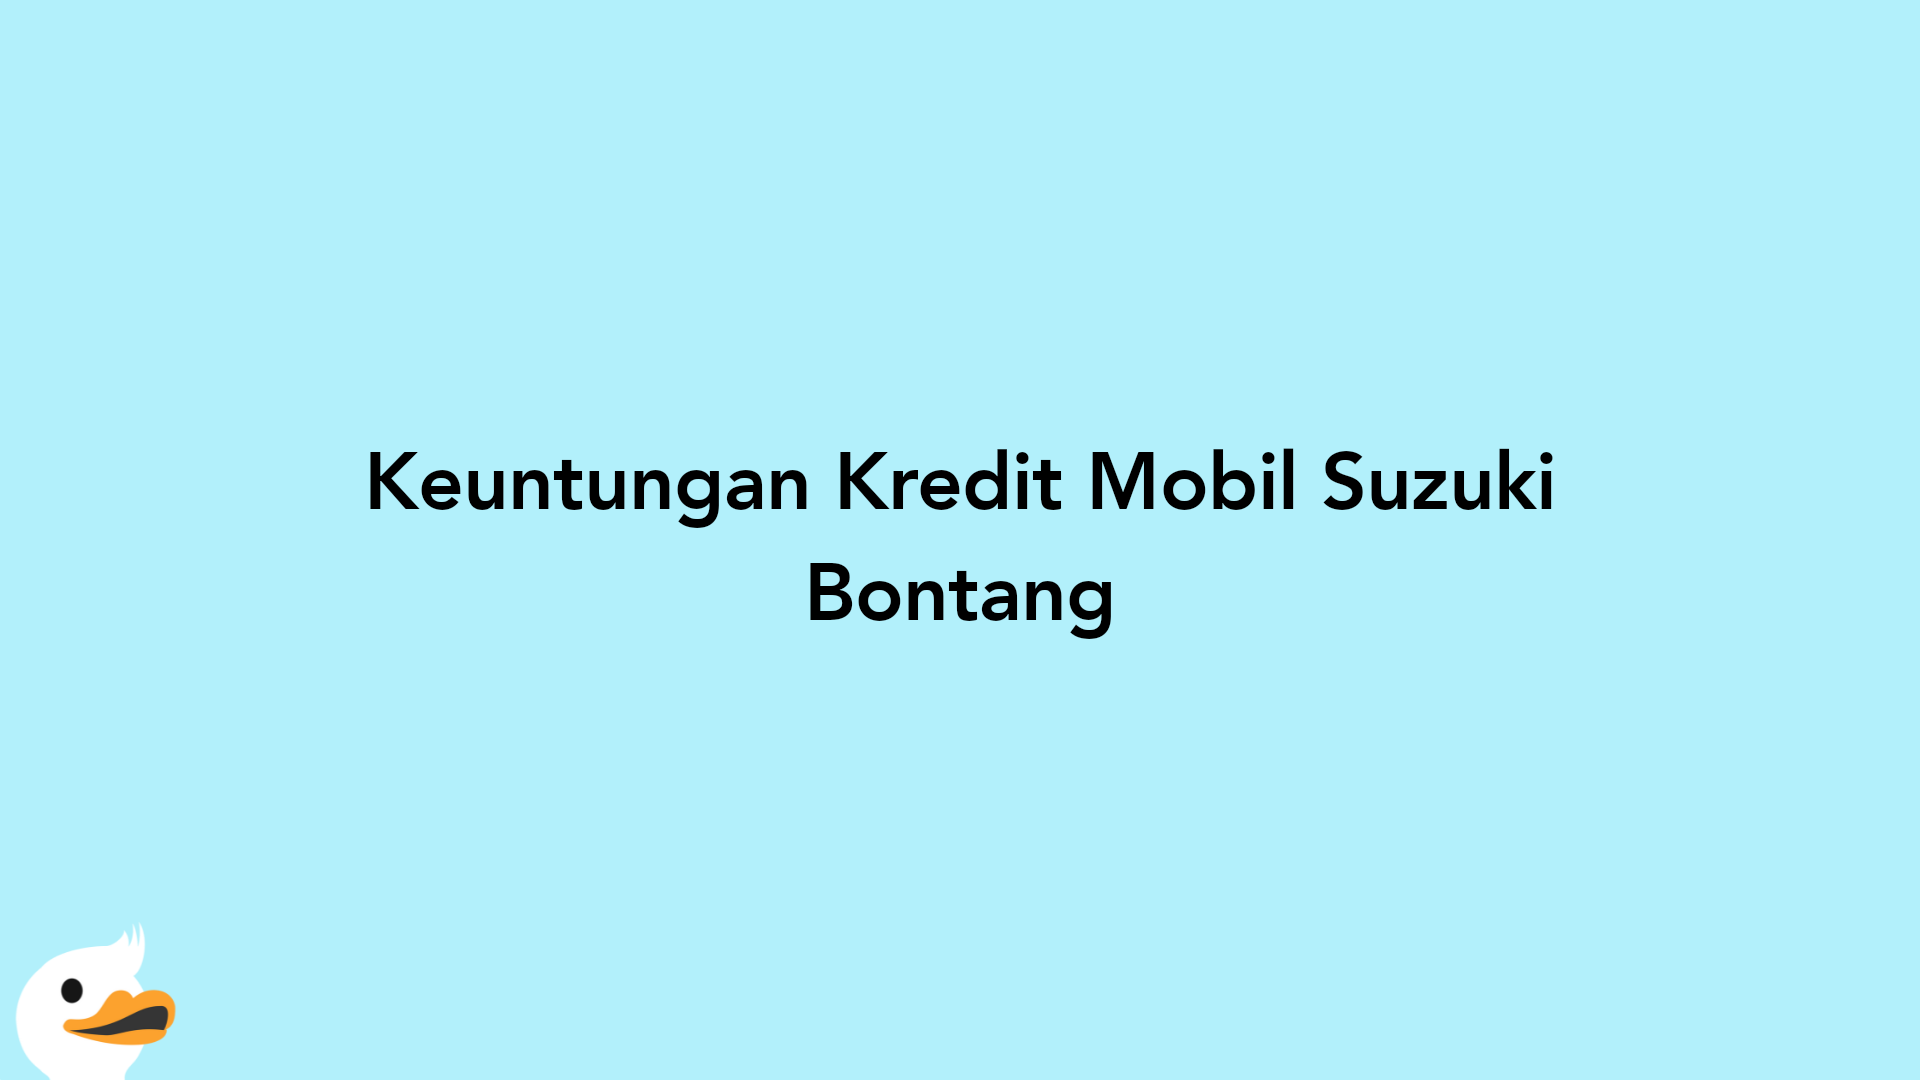 Keuntungan Kredit Mobil Suzuki Bontang